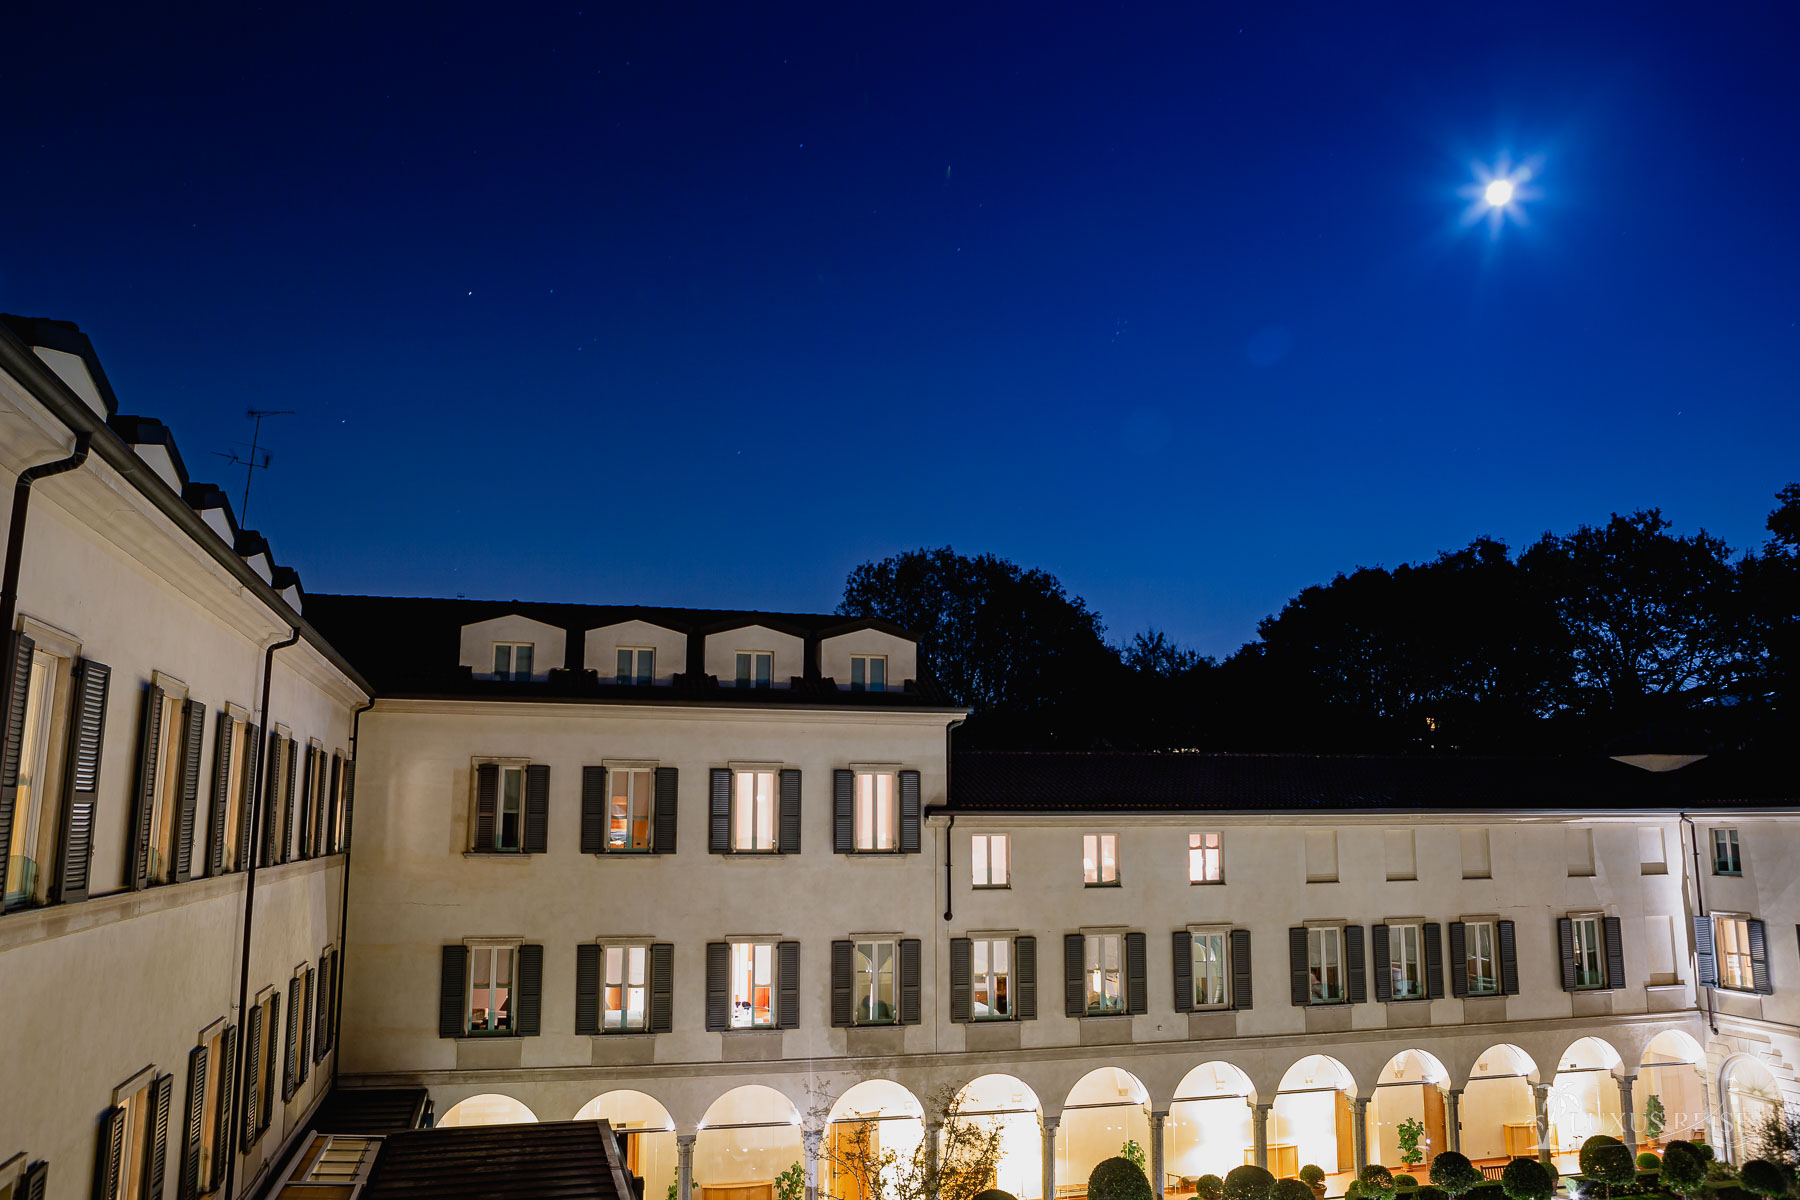 Four Seasons Hotel Mailand - Luxus in Italien genießen - Hoteleindrücke